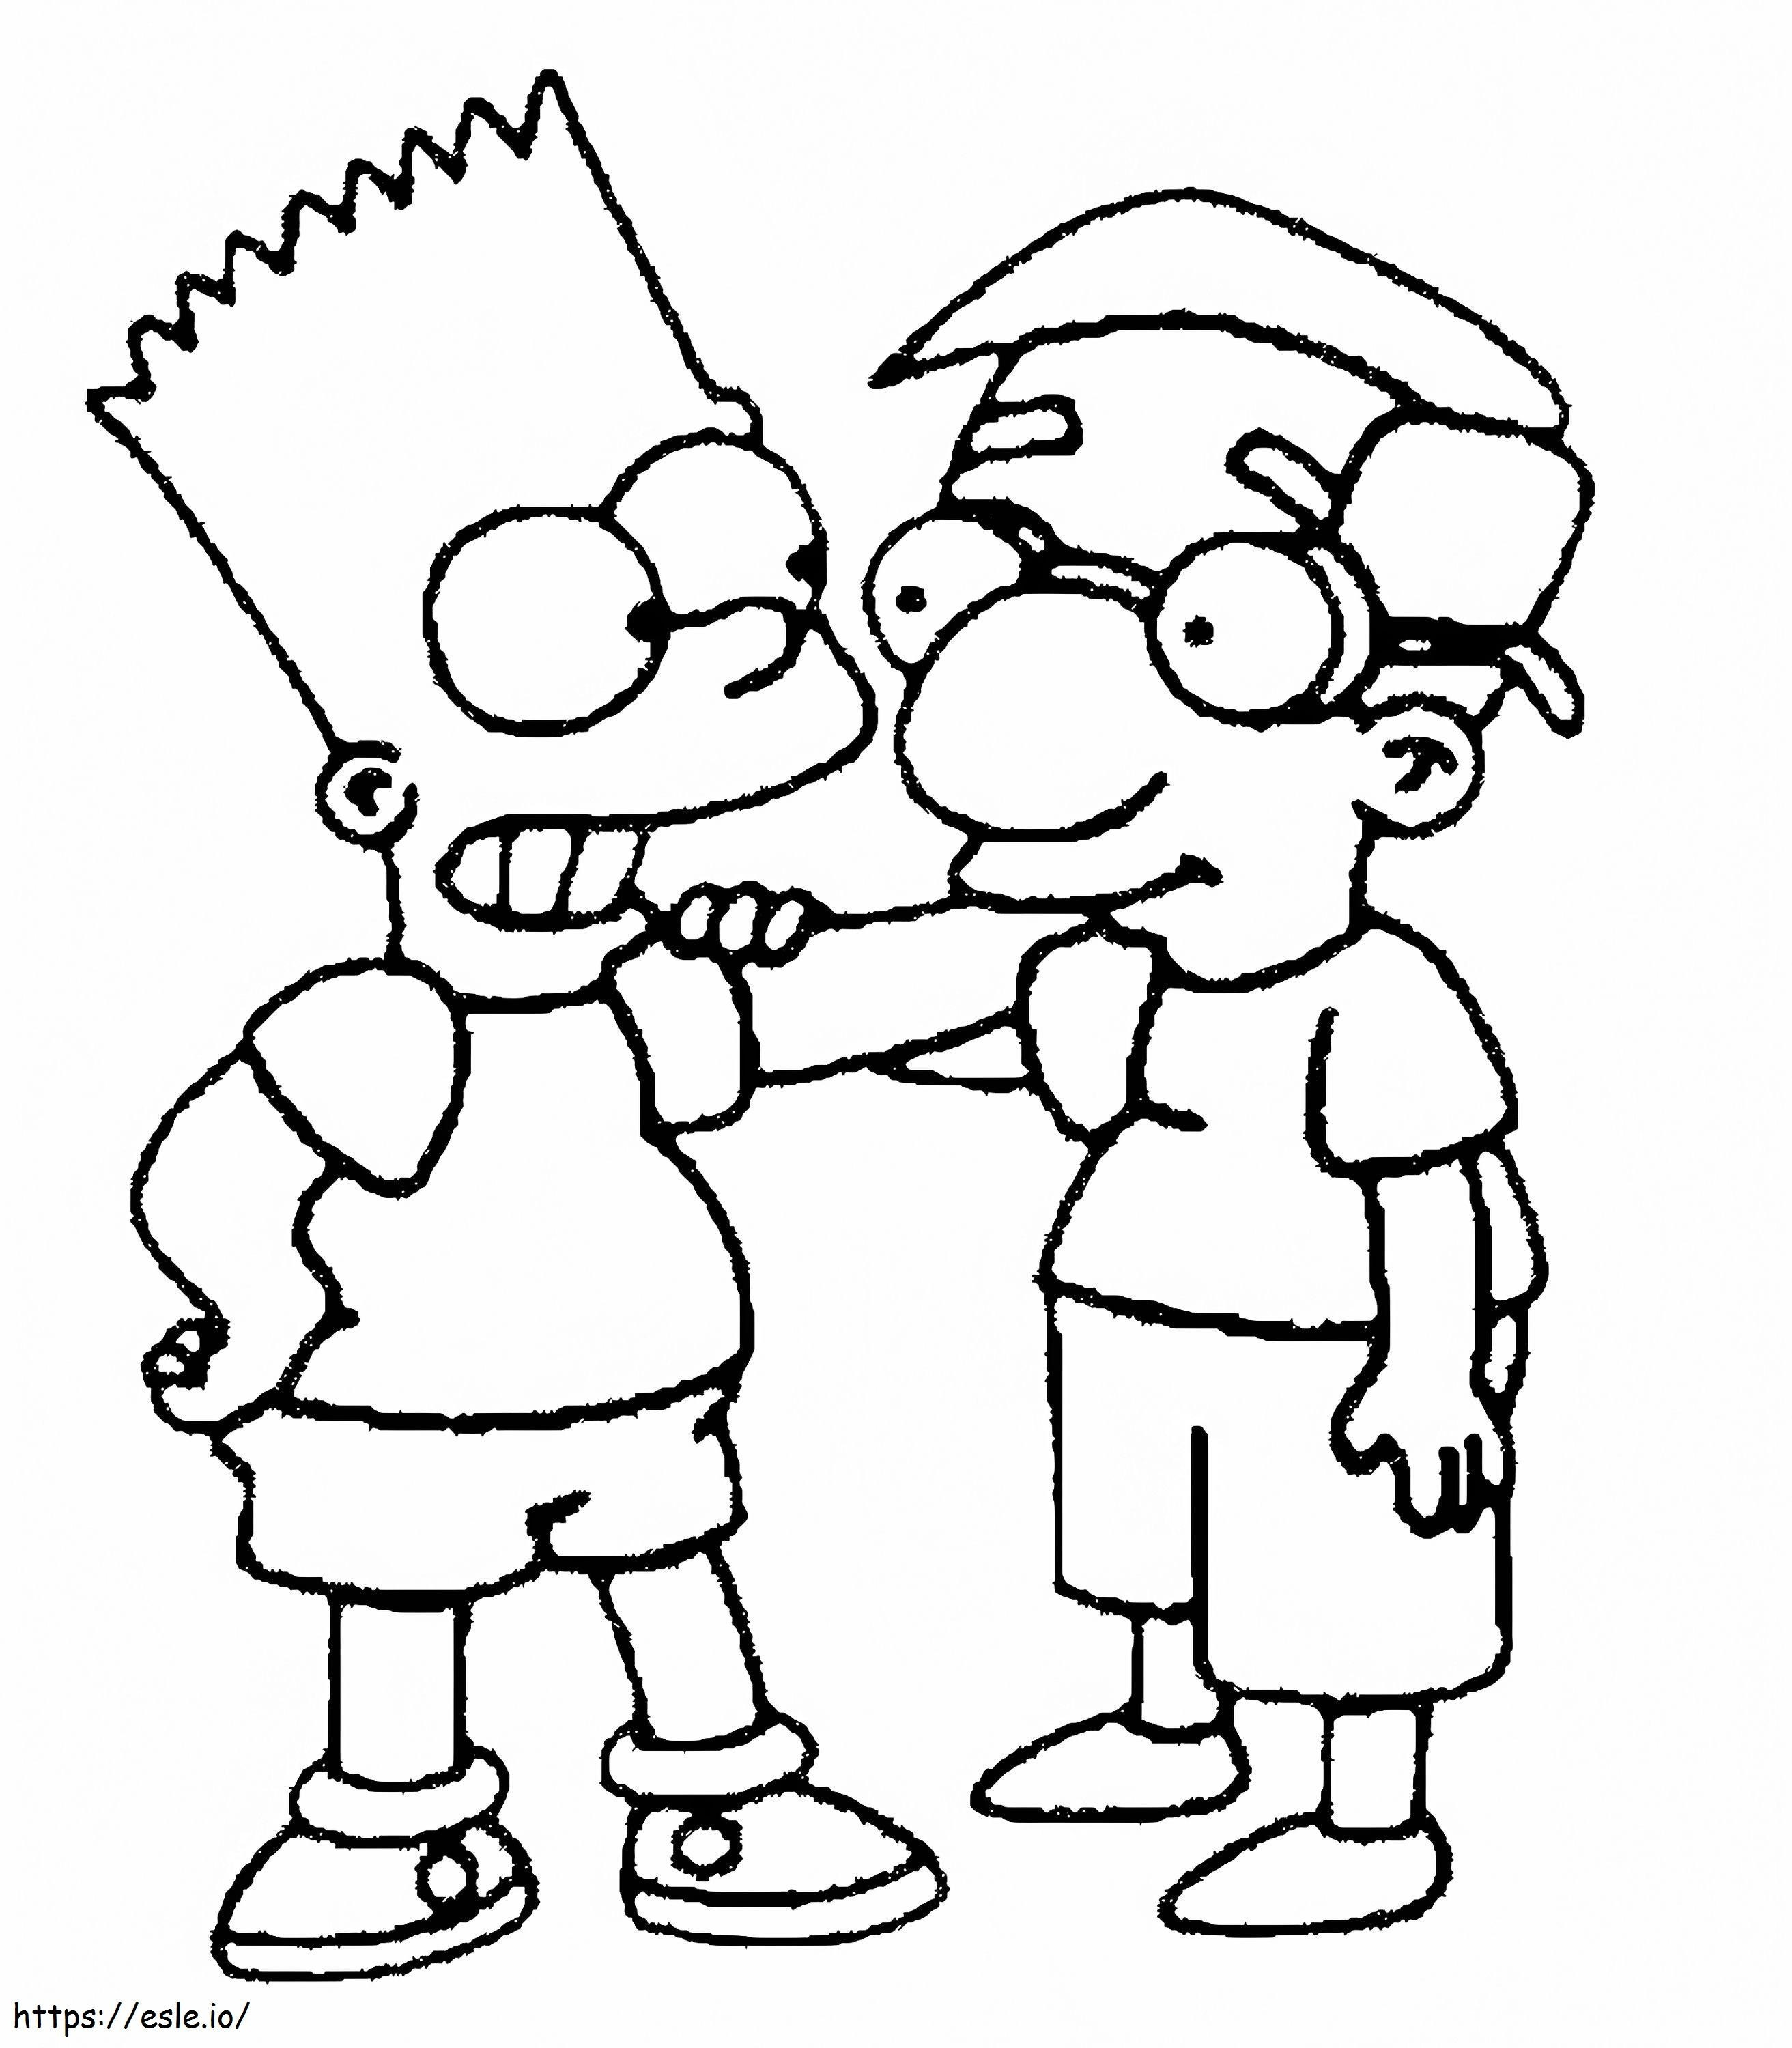 Coloriage Bart Simpson4 à imprimer dessin